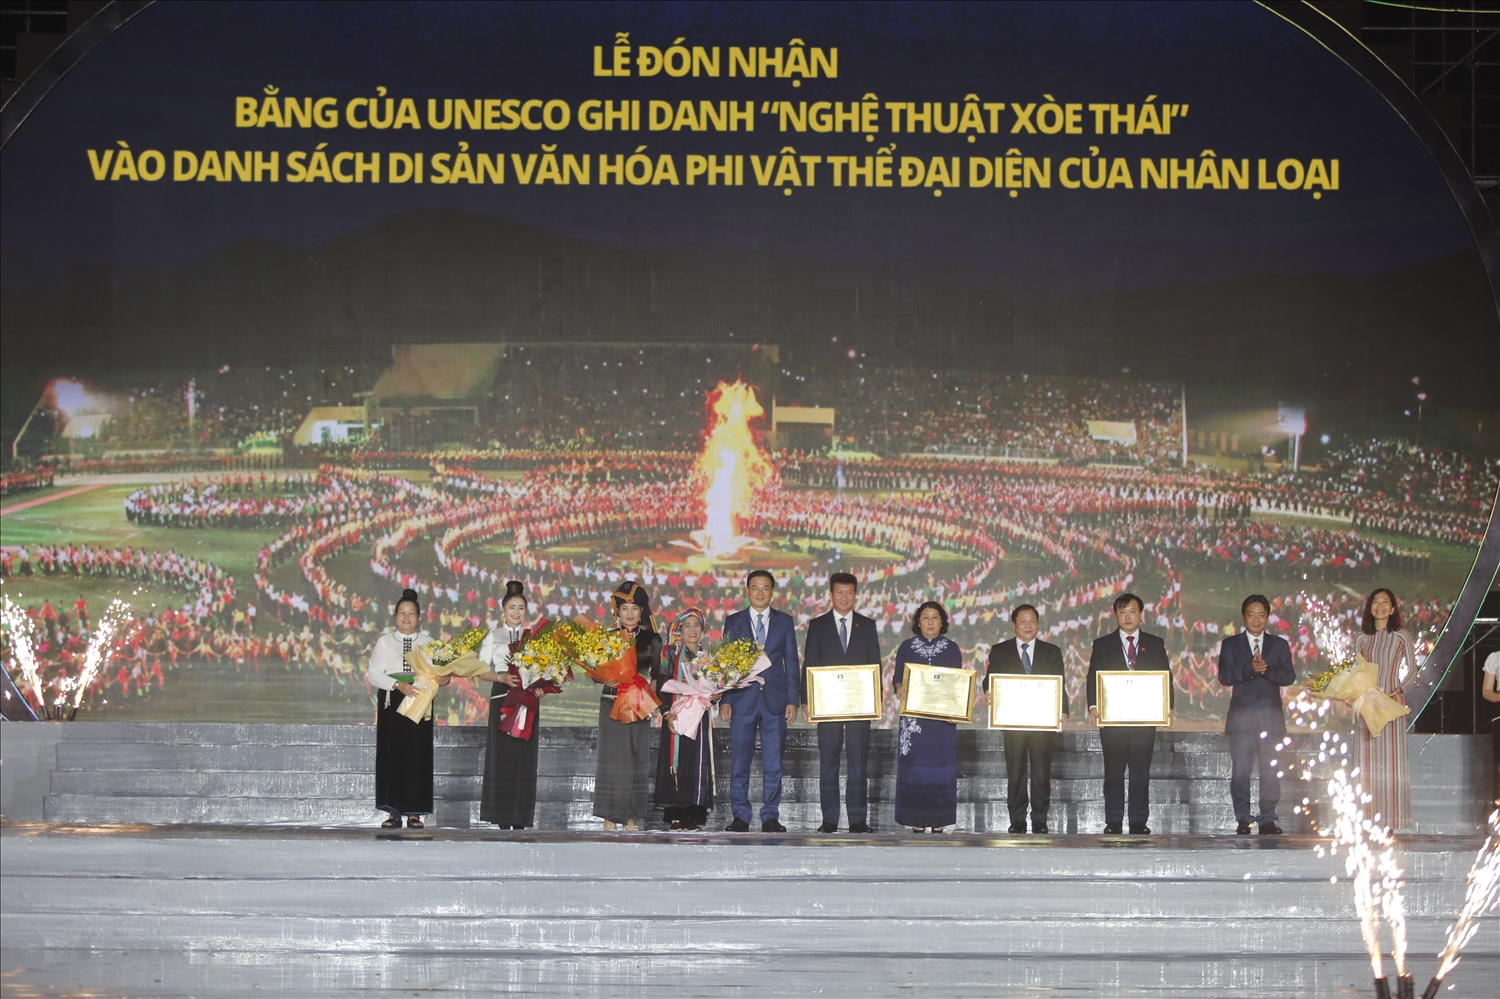 Giây phút lịch sử được đón chờ nhất, Lễ Trao - Đón nhận Bằng của UNESCO ghi danh “Nghệ thuật Xòe Thái” vào Danh sách Di sản văn hóa phi vật thể đại diện của nhân loại